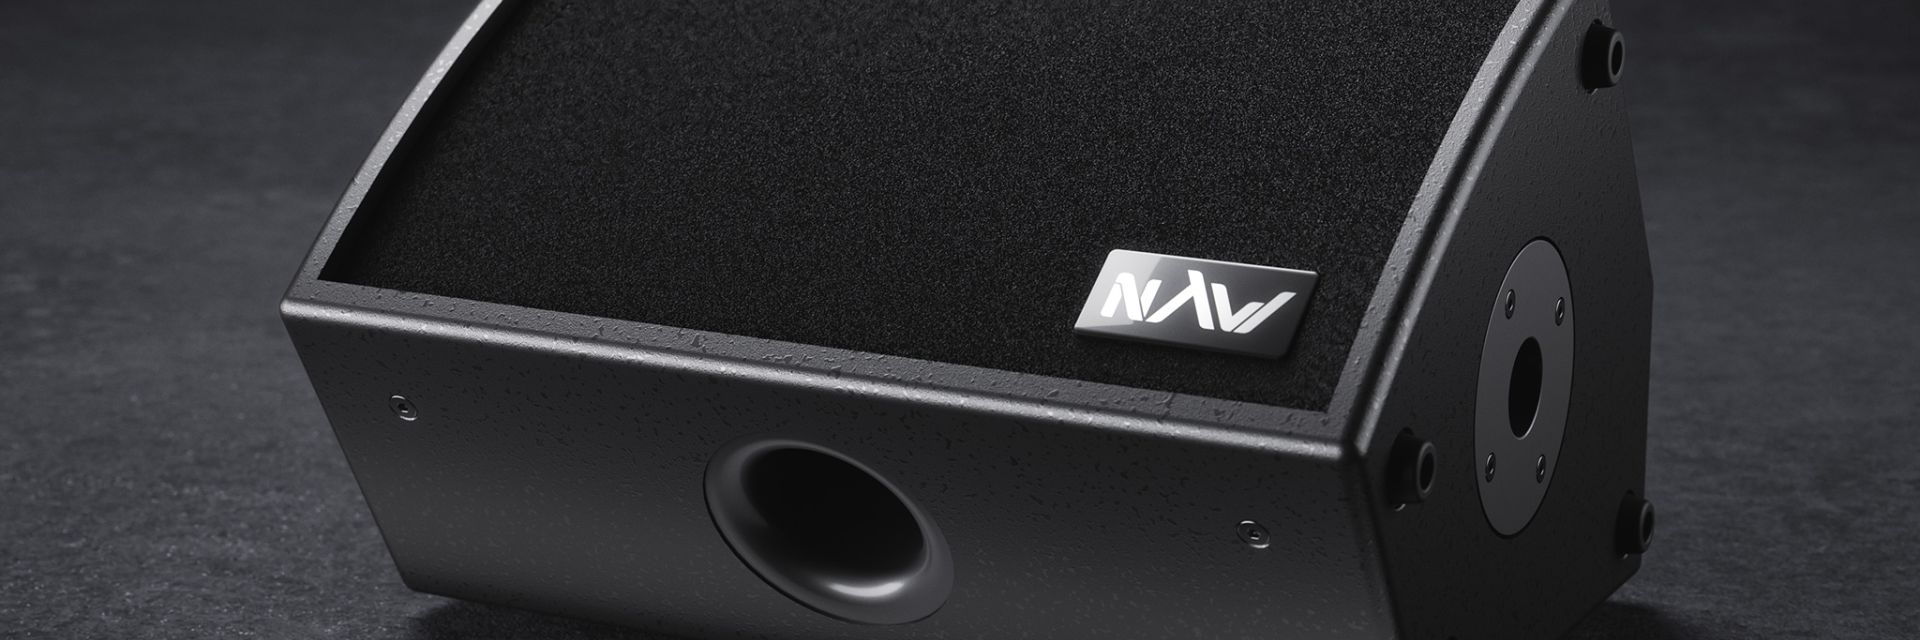 Monitor sceniczny NAW MS8, odsłuch do instalacji